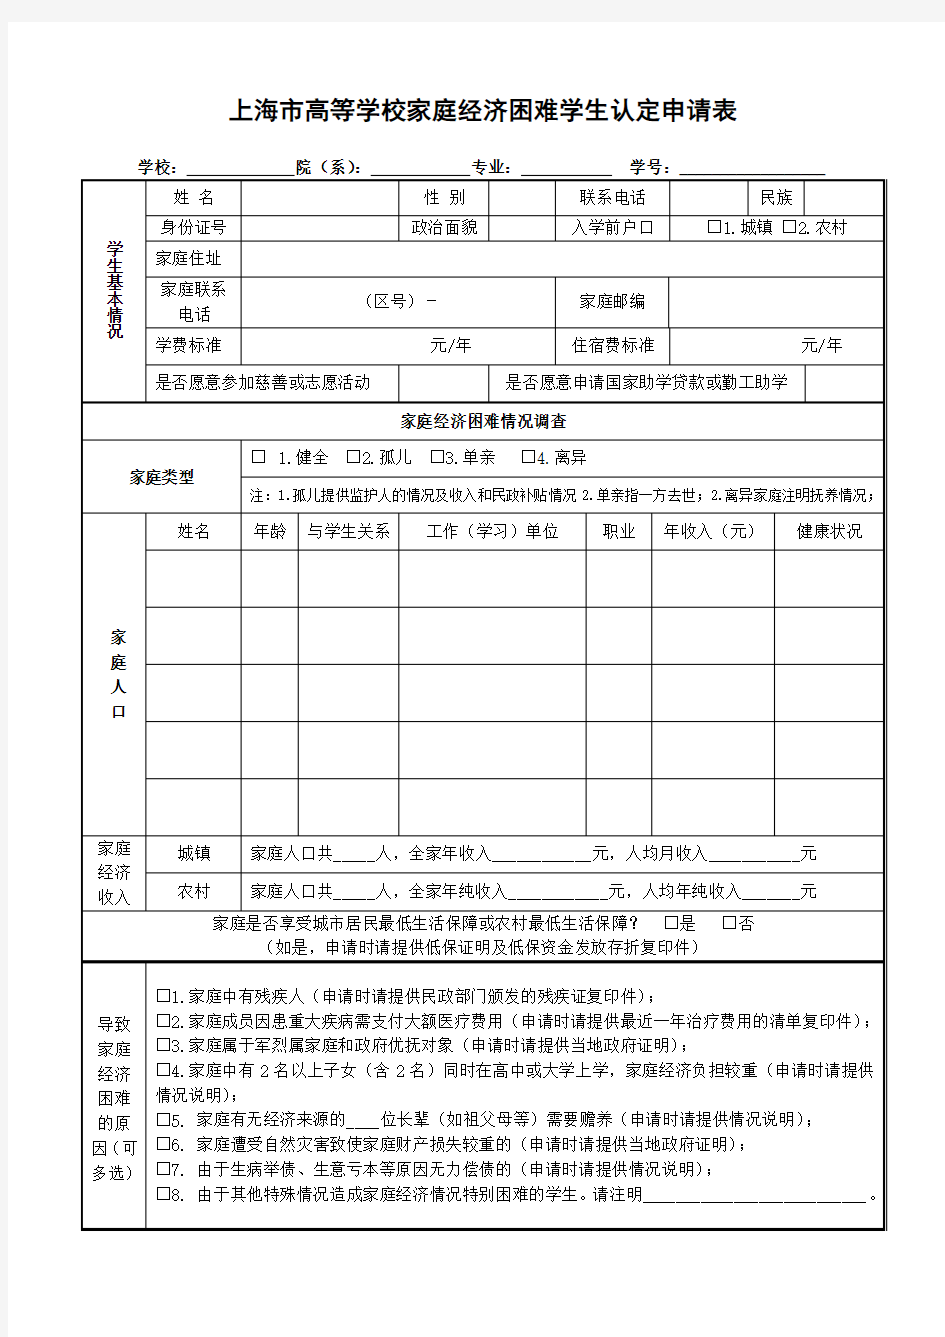 2010版上海市家庭经济困难学生贫困认定申请表